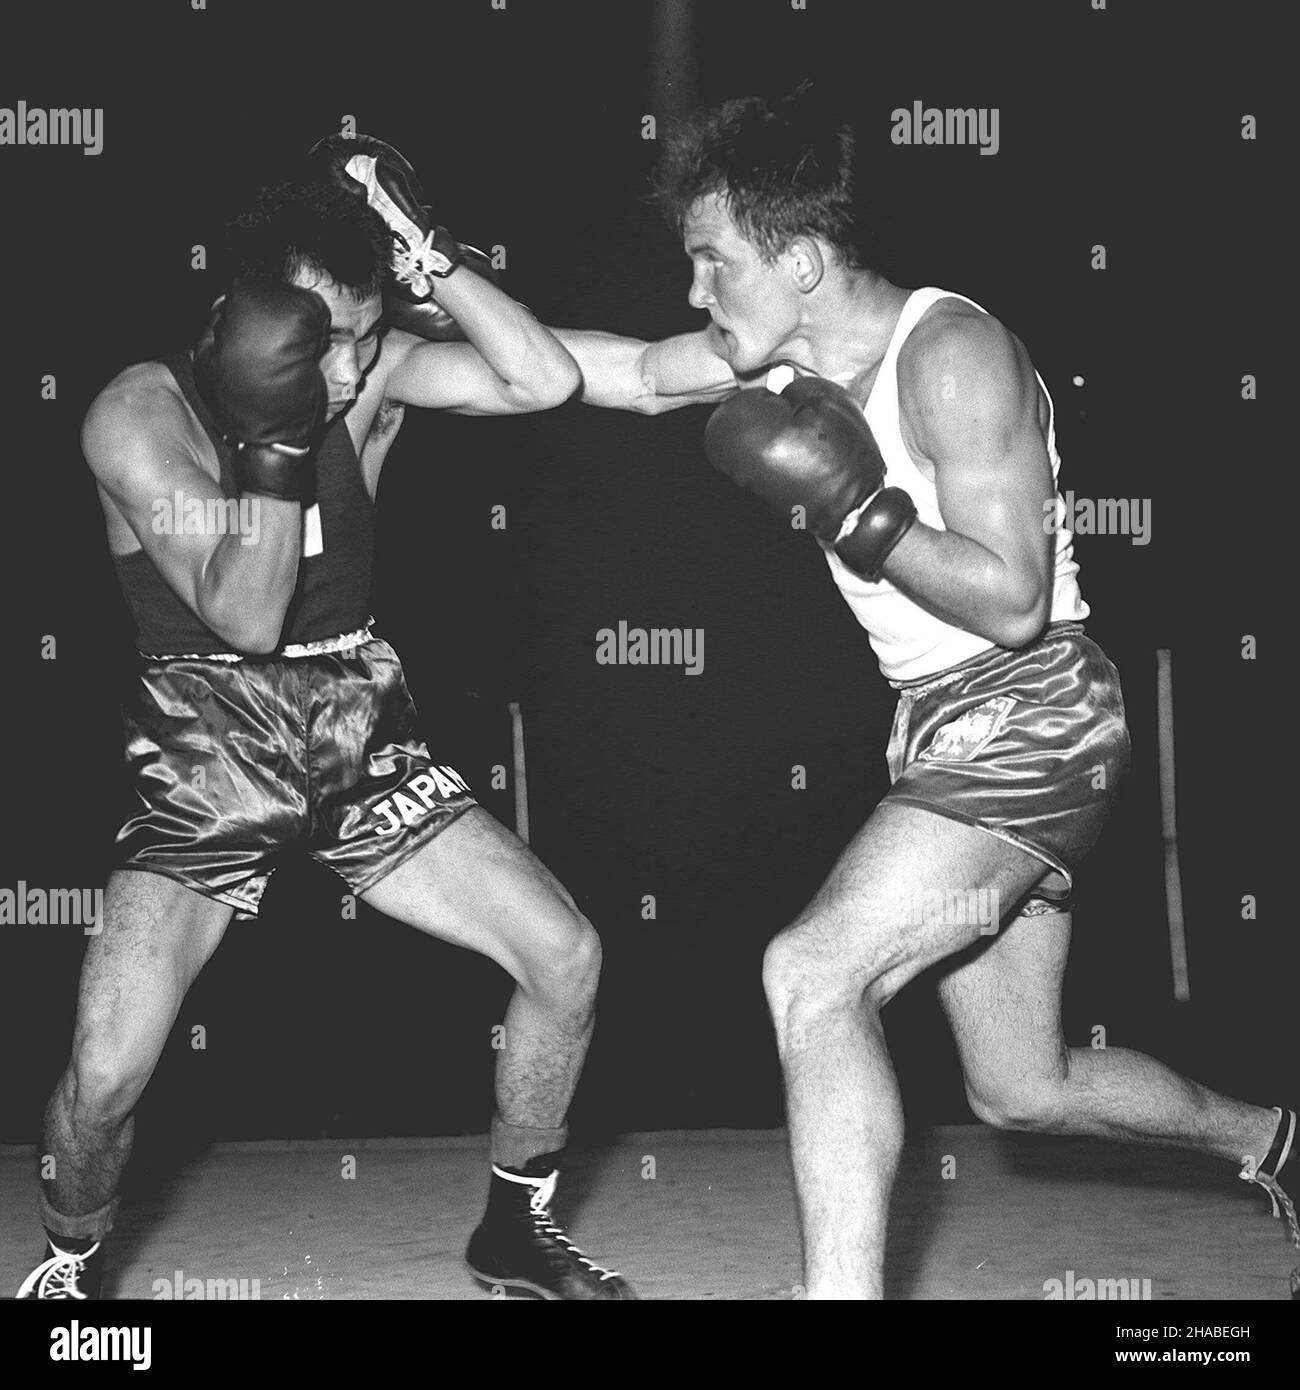 Warszawa, 27.08.1961. Na warszawskim Torwarze odby³o sie miêdzynarodowe spotkanie bokserskie Polska - Japonia zakoñczone zwyciêstwem bokserów polskich 14:0. N/z: w wadze lekkoœredniej Jerzy Kulej (P) pokana³ Watanabe. (mr) PAP/Zbigniew Matuszewski     Warsaw, 27.08.1961. International Boxing Tournament Poland-Japan. Polish boxerw won 14:0. Pictured: in middleweight Polish Jerzy Kulej (R) won with Watanabe. (mr) PAP/Zbigniew Matuszewski Stock Photo